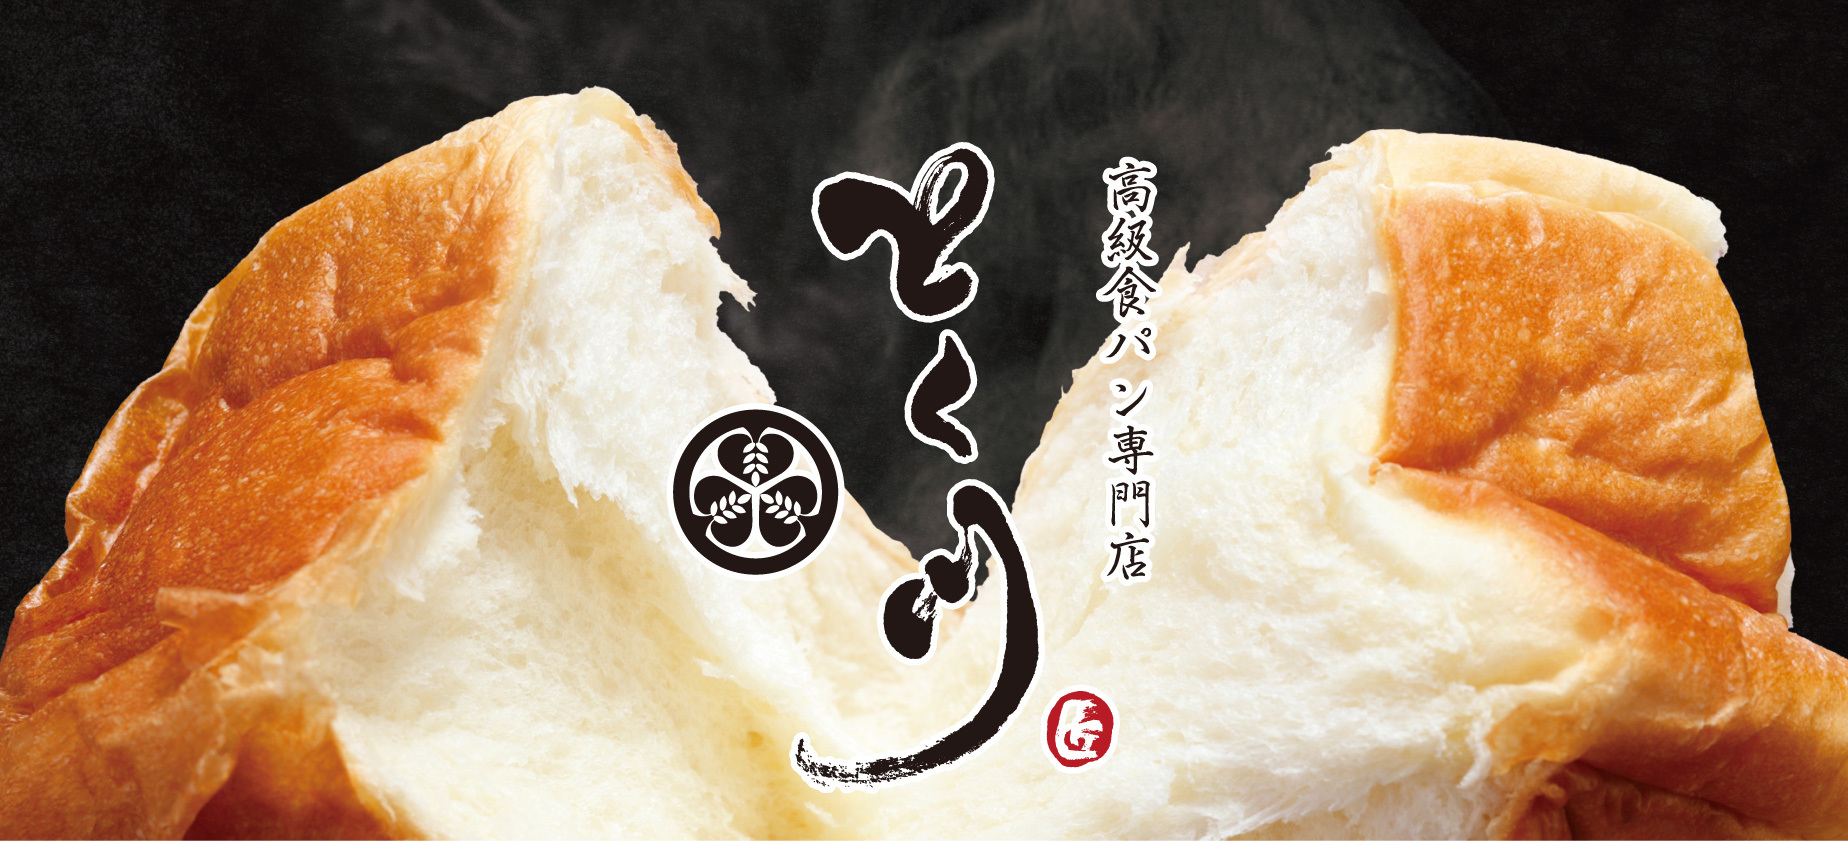 ～関東エリア初出店～　
高級食パン専門店「とく川 千葉ニュータウン店」が
2022年7月15日(金)にグランドオープン！